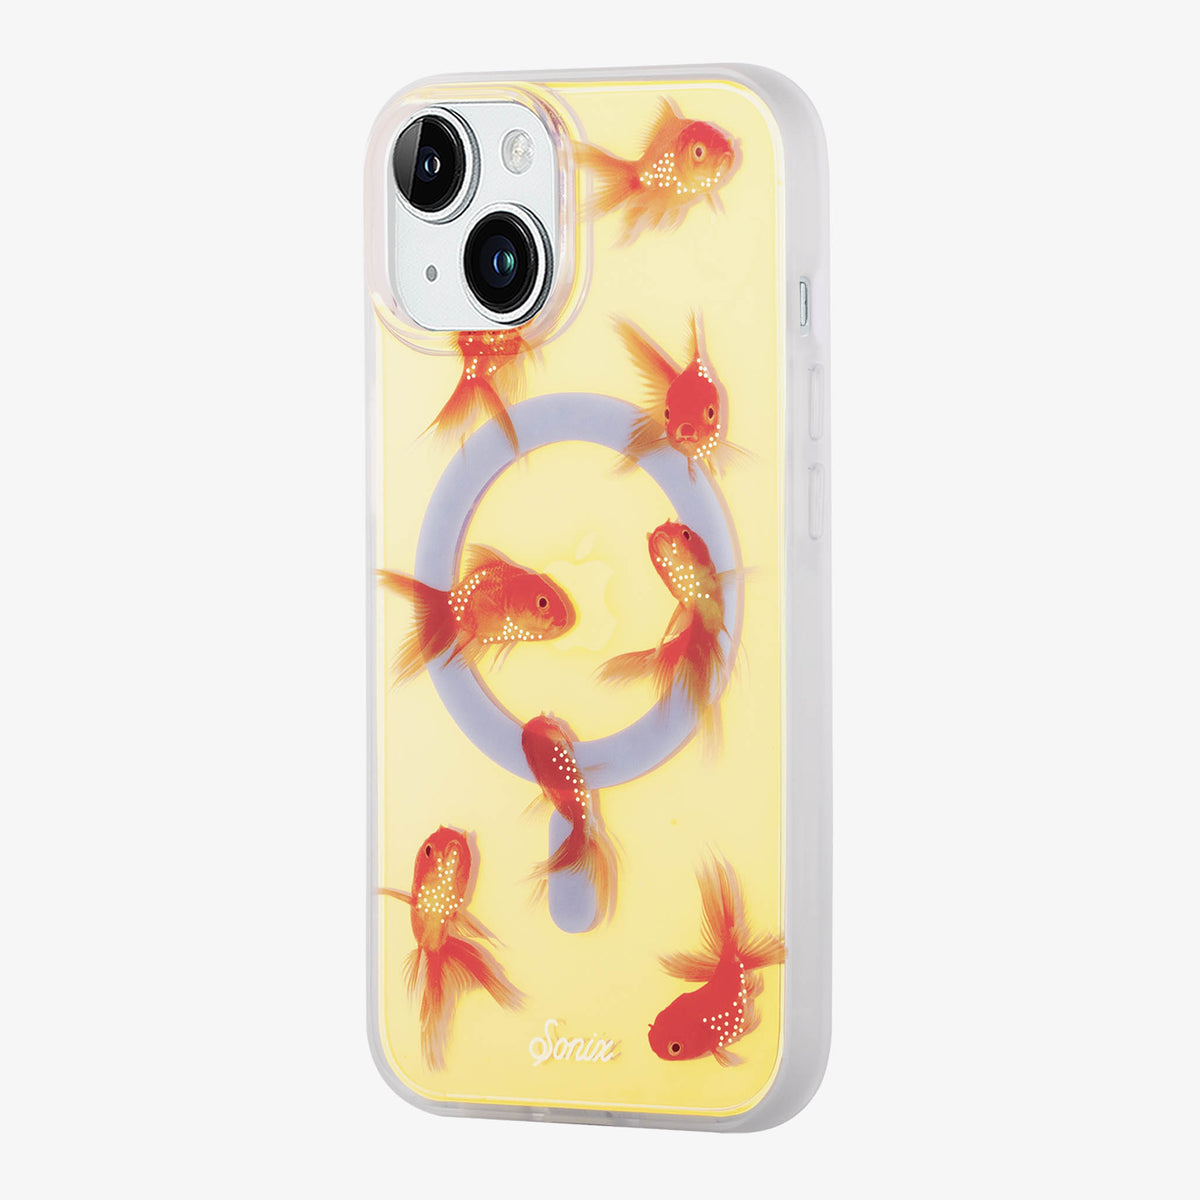 Eomnniofoy Fishing Phone Cases Gifts for Men iPhone 11 12 13 14 Pro Max  Plus Minix6 7 8,Samsung A02 A10 A13 A42 A51 A52 A53 A73 S20 S21 S22  S23,Moto 20 Lite,Pixel